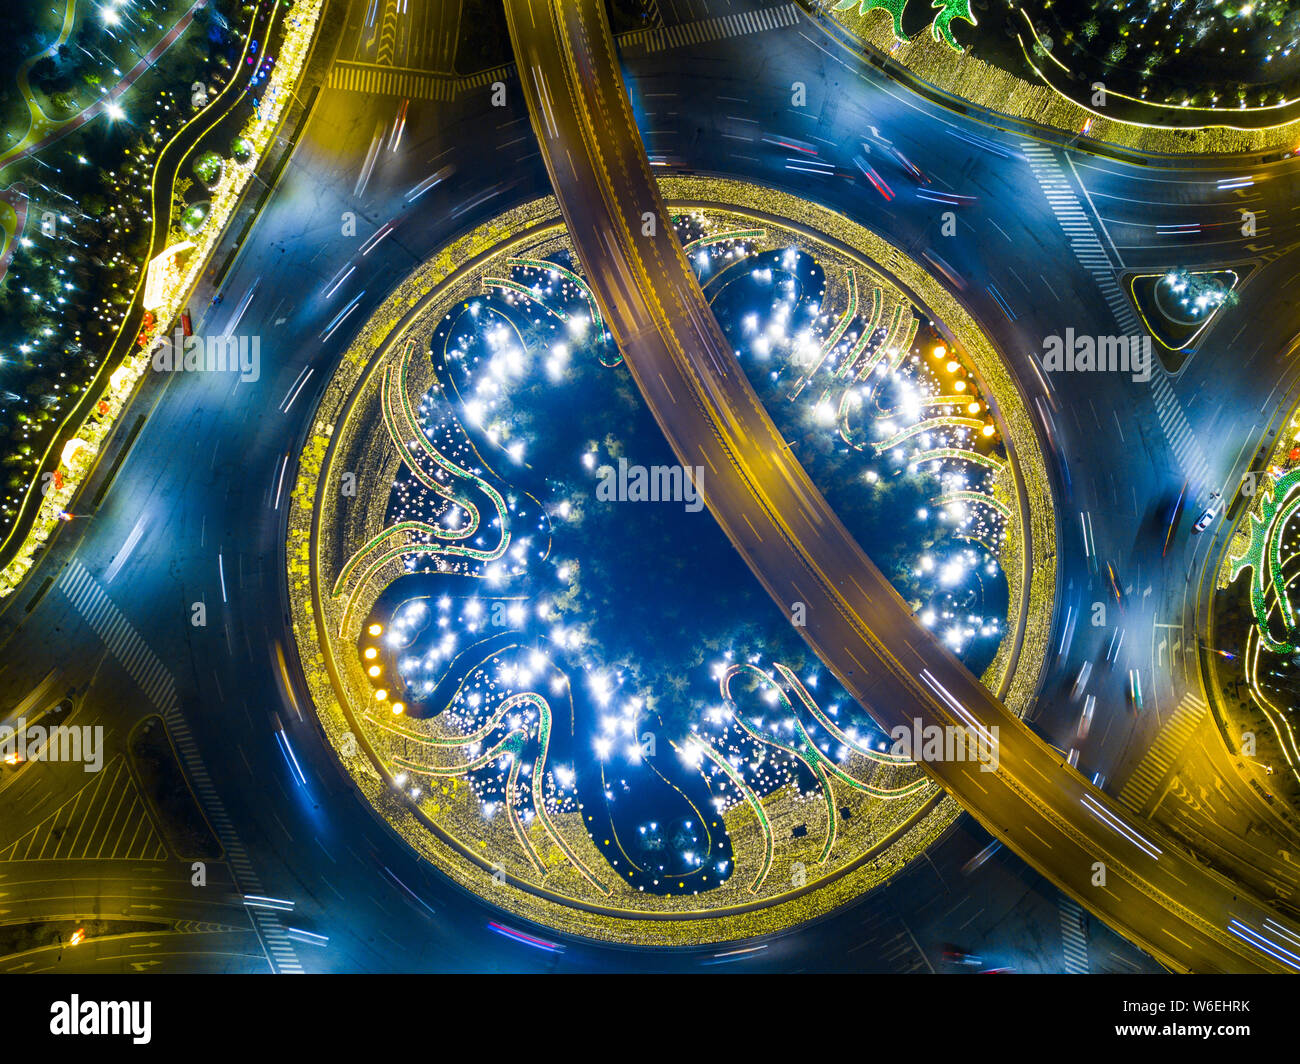 Vue de nuit de l'antenne d'un rond-point et la proximité des routes, ressemblant à l'intérieur d'une horloge mécanique, dans la ville de Xi'an, province du Shaanxi du nord-ouest de la Chine Banque D'Images